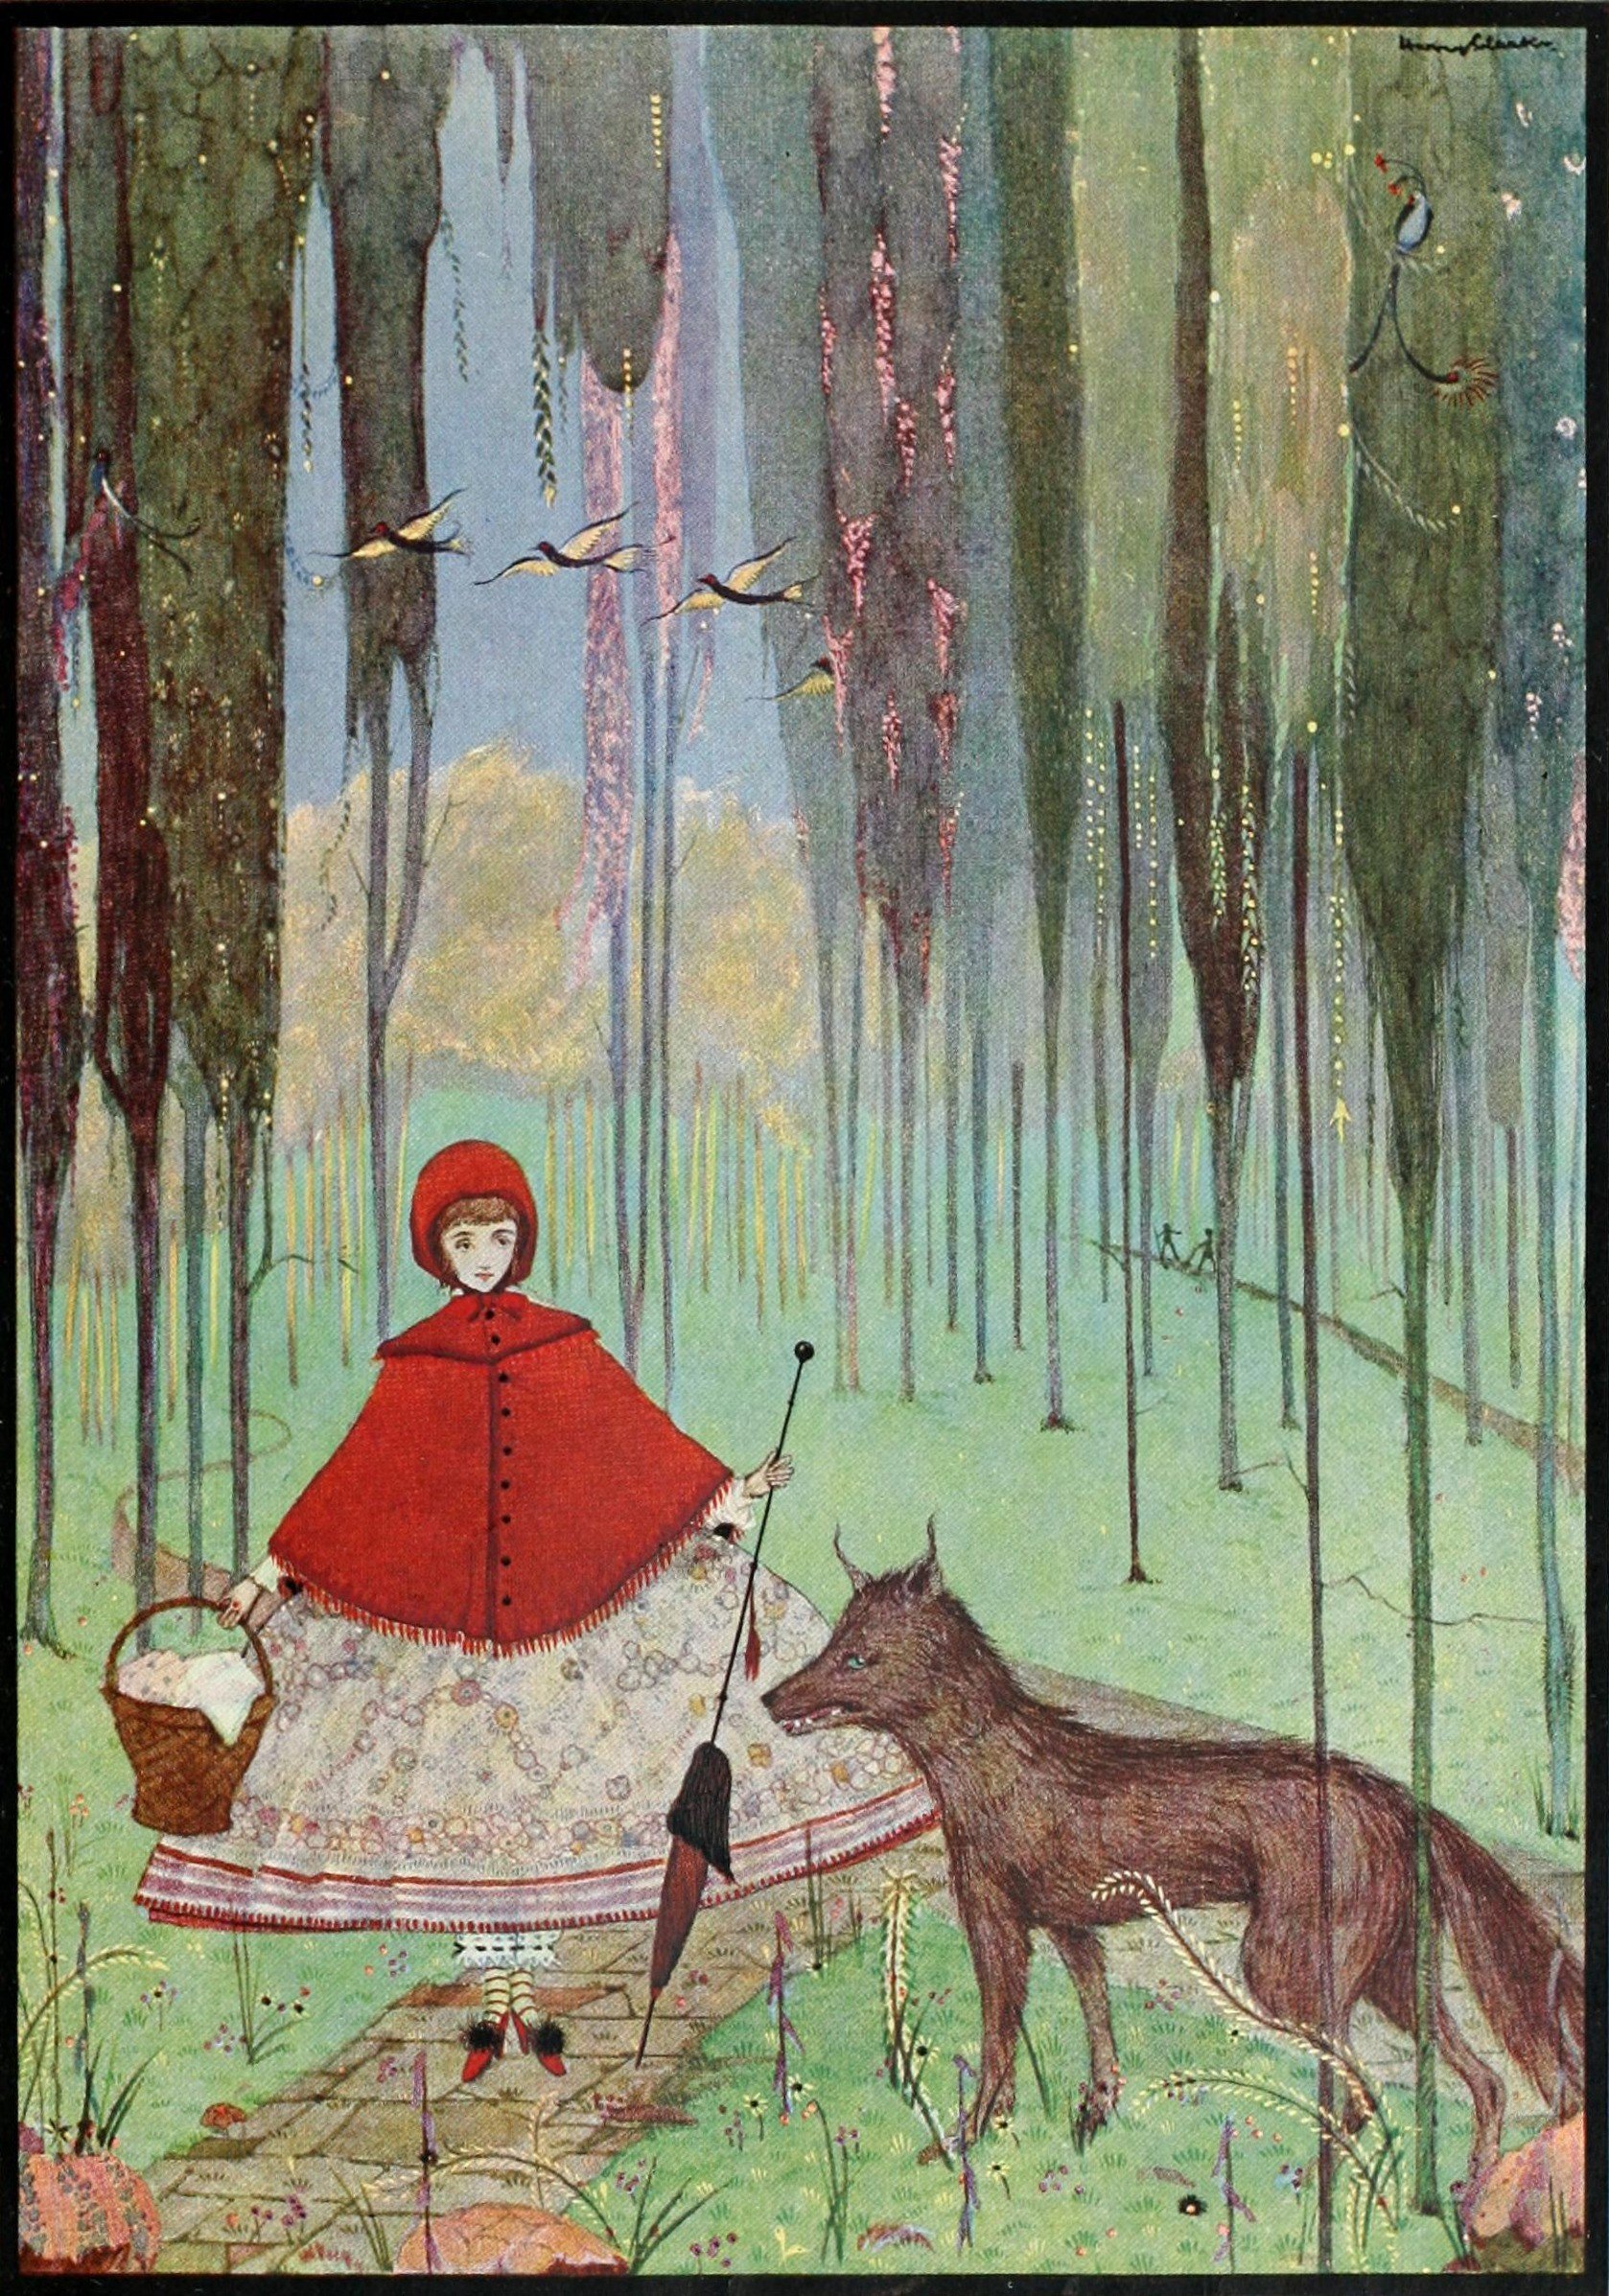 Ilustración de La caperucita roja de Harry Clarke (1922)